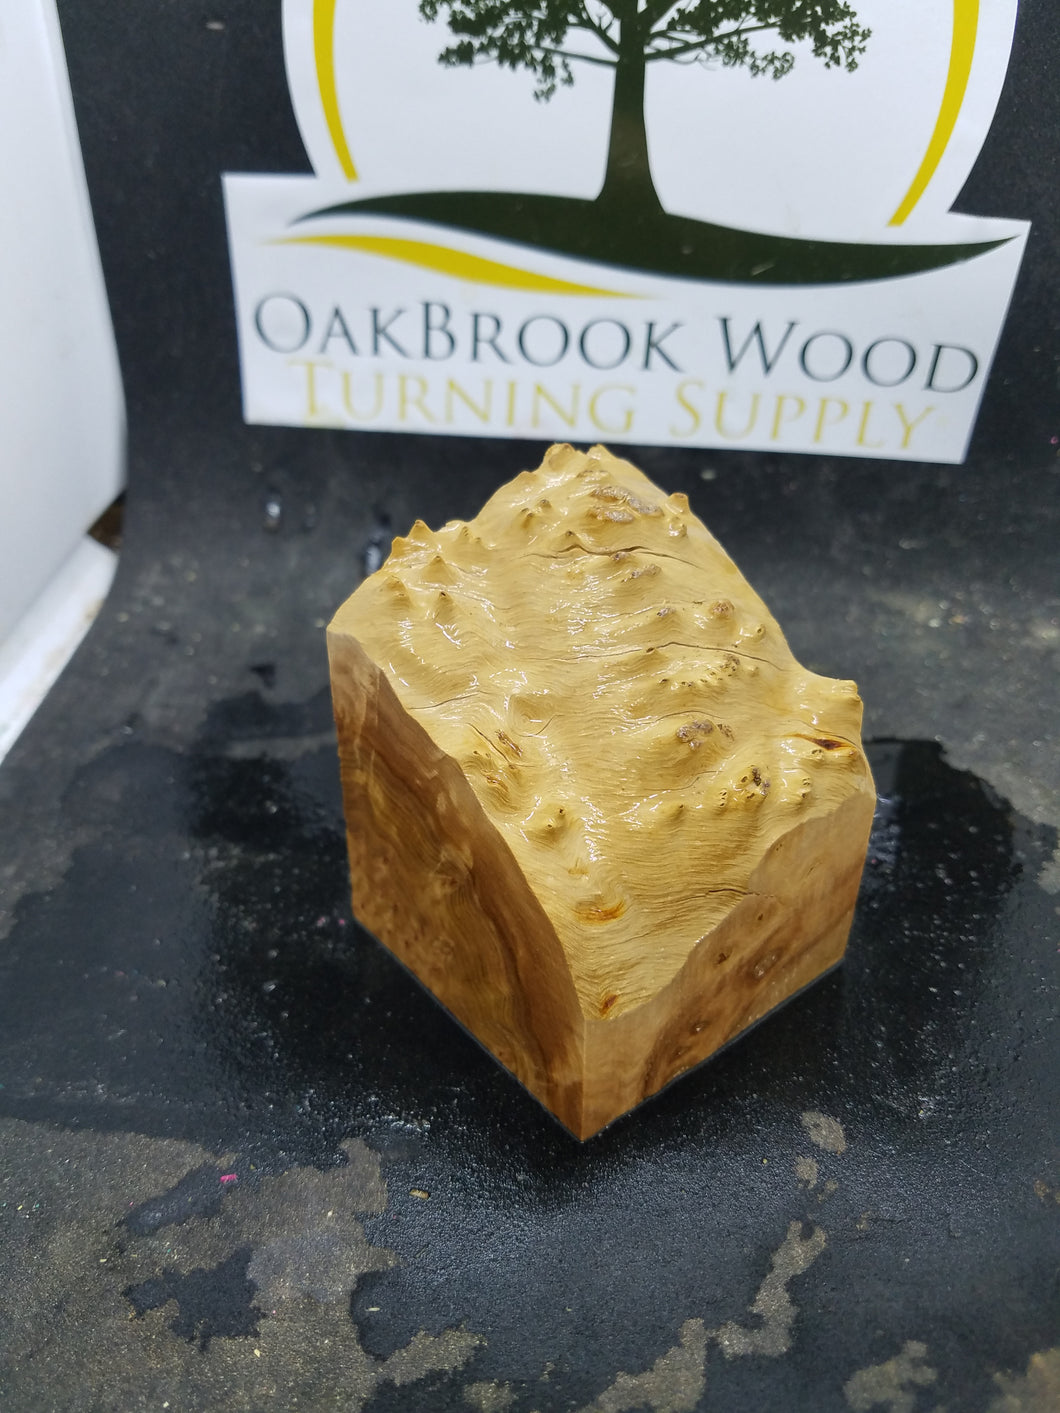 Casting corrugata burl - Oakbrook Wood Turning Supply